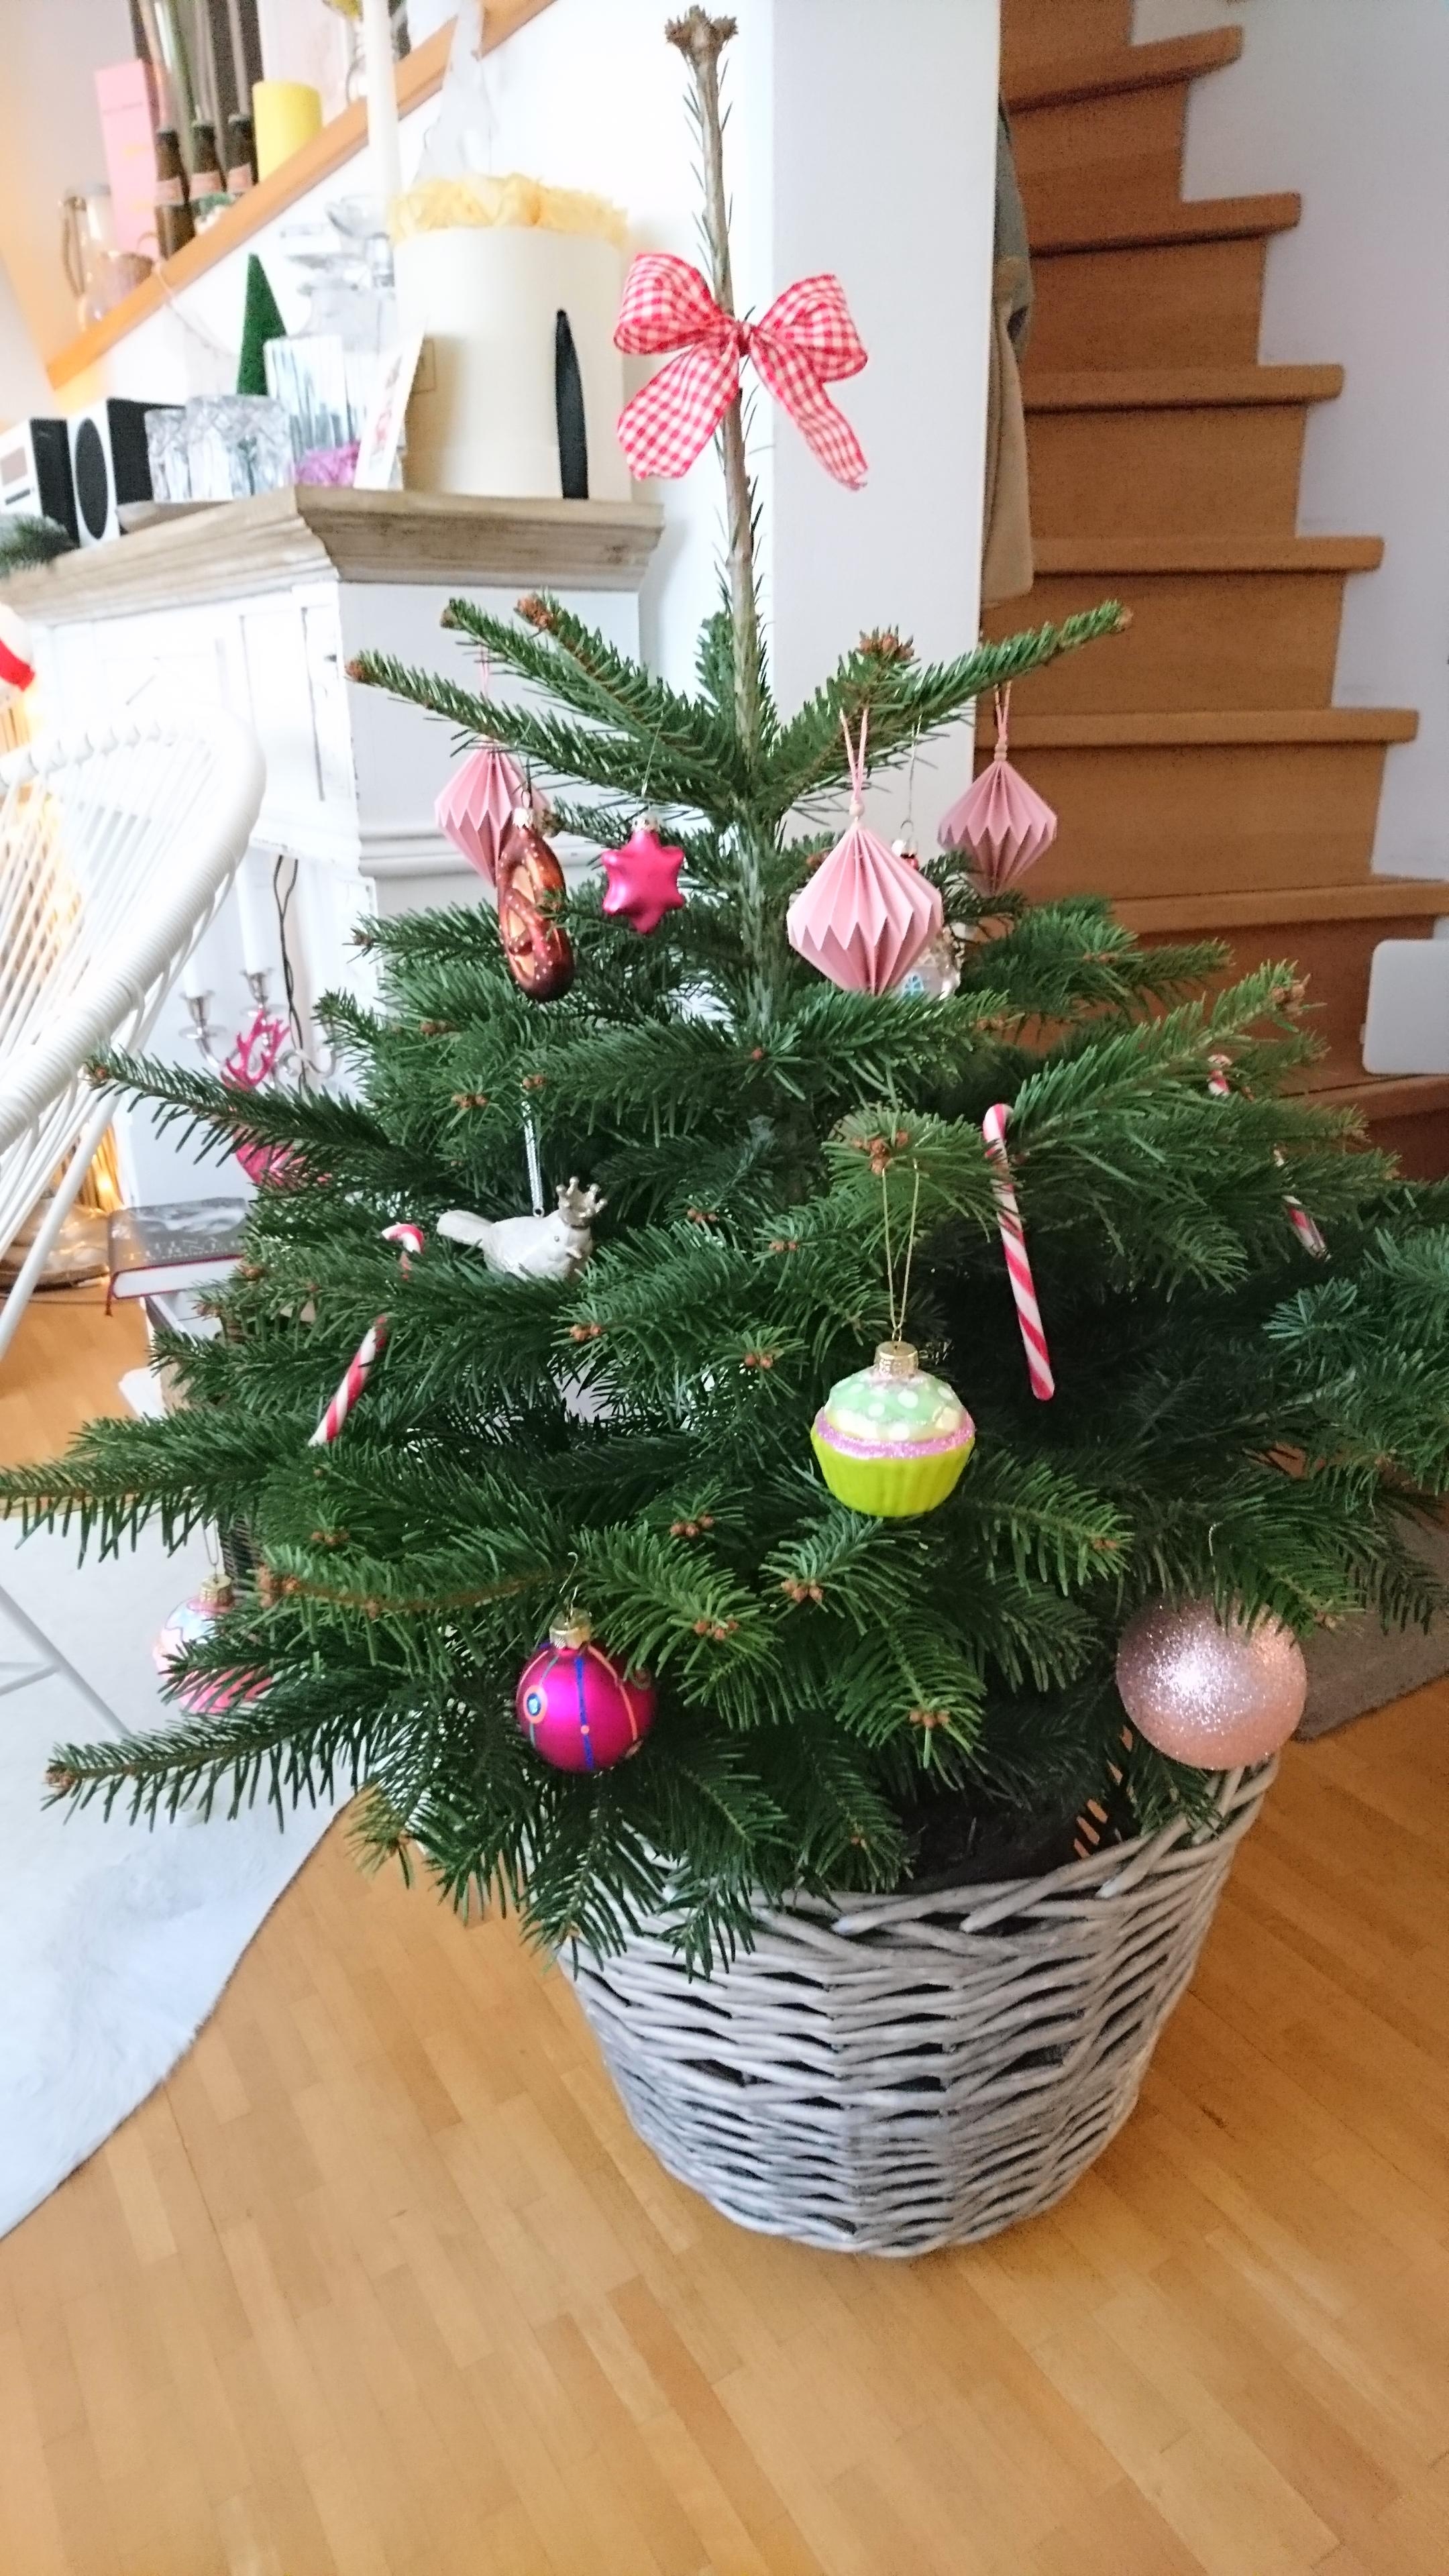 Weihnachts- Bäumchen mit Breze🎄

#Weihnachtsbaum #Christbaum #Tannenbaum #Tanne #xmas #Advent #xmasdeko #Weihnachtsdeko